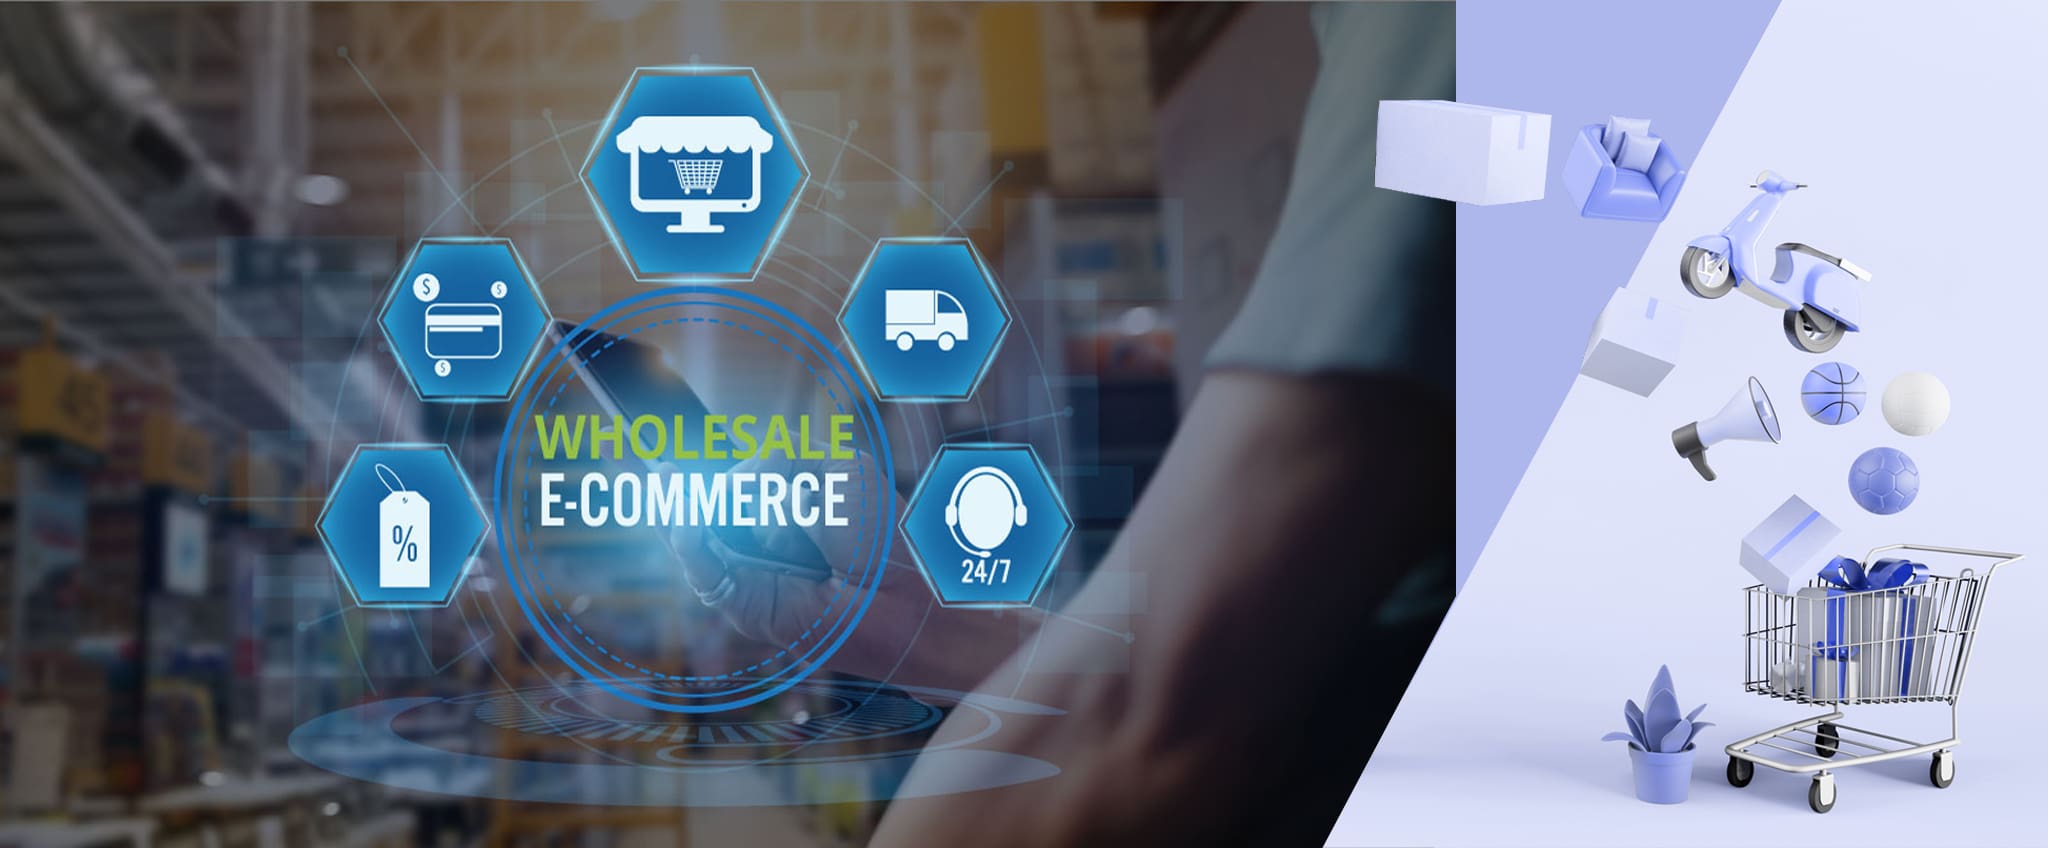 تجارت الکترونیک عمده فروشی فرایند فروش محصولات به صورت عمده به کسب‌وکارهای دیگر از طریق پلتفرم‌های آنلاین است، به جای فروش تکی محصولات به مصرف‌کننده نهایی